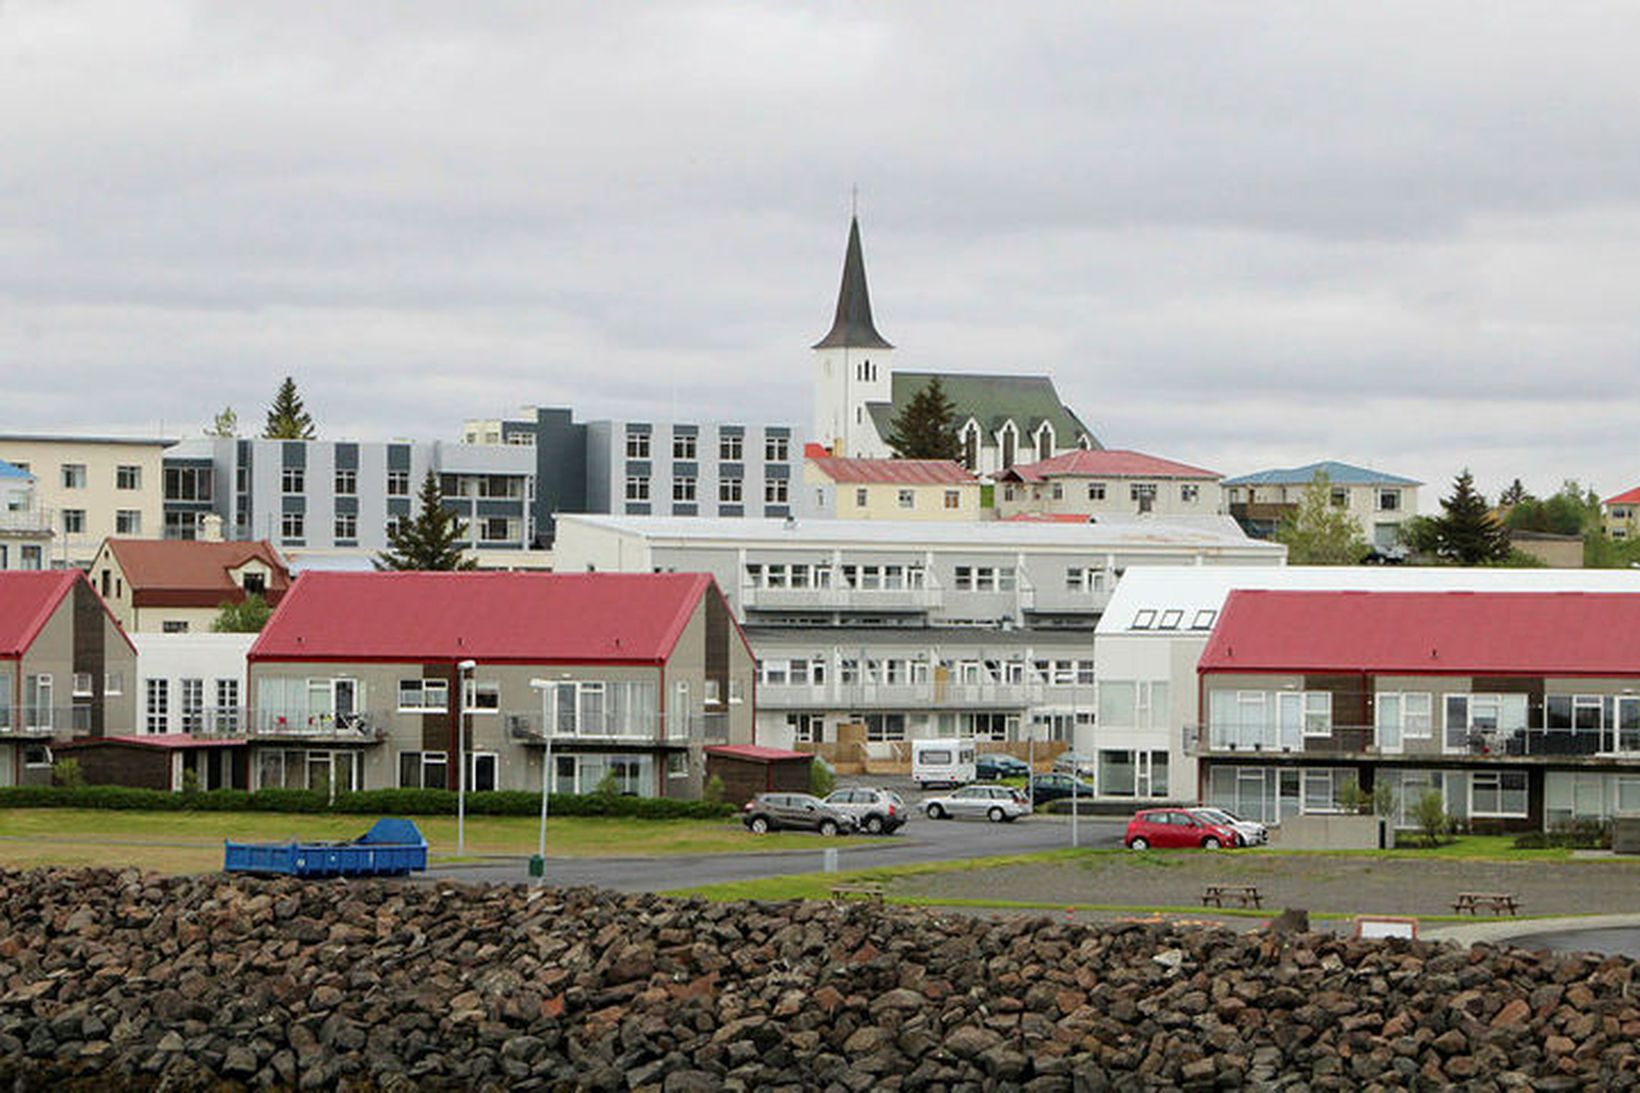 Lóðir eru lausar í Borgarnesi og fleiri þéttbýliskjörnum.